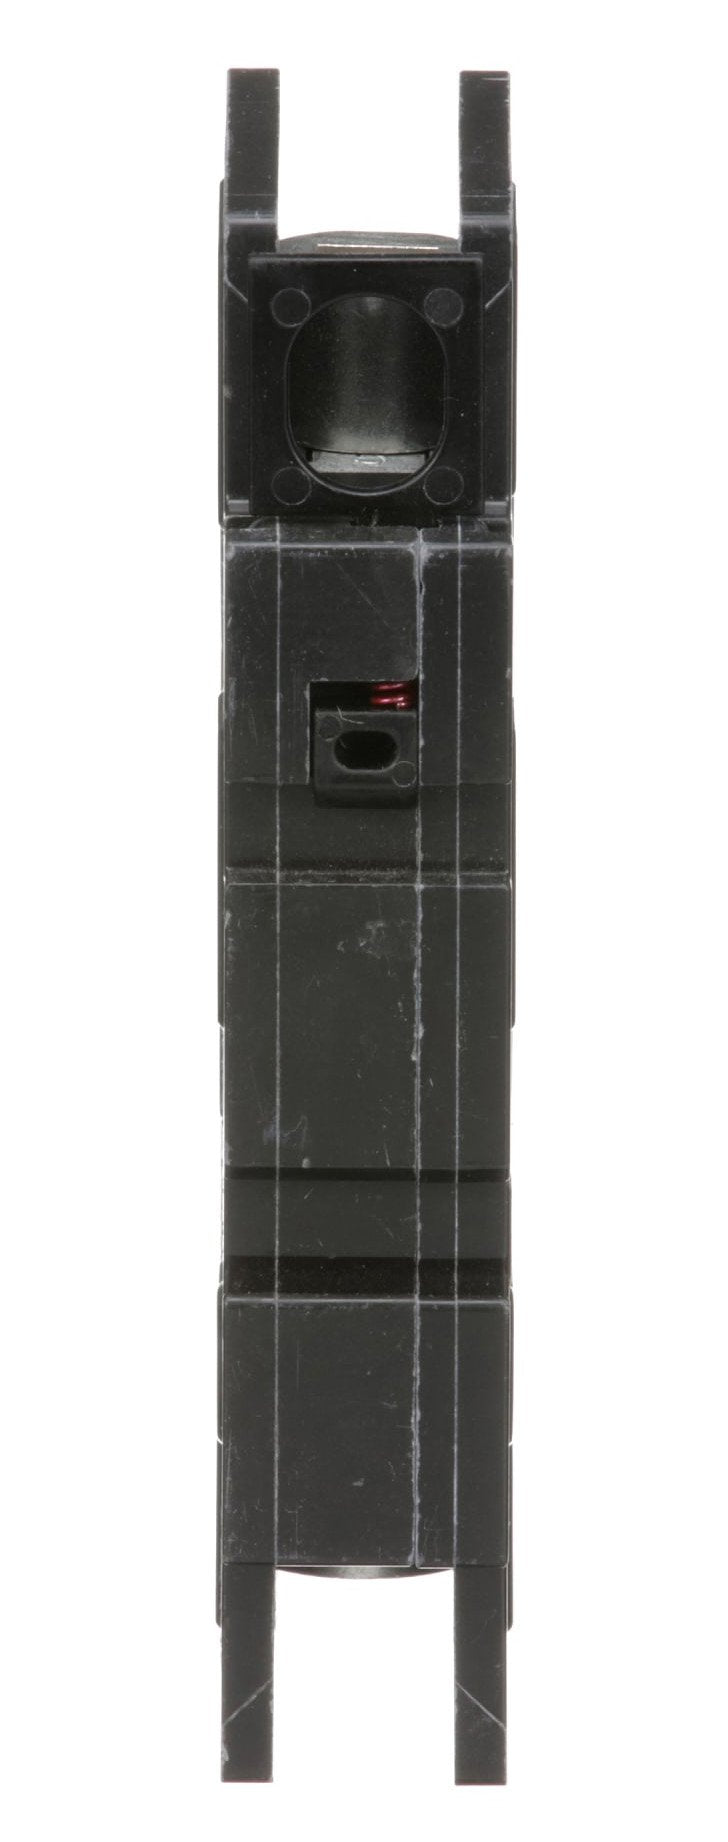 QOU160 - Square D - 60 Amp Circuit Breaker